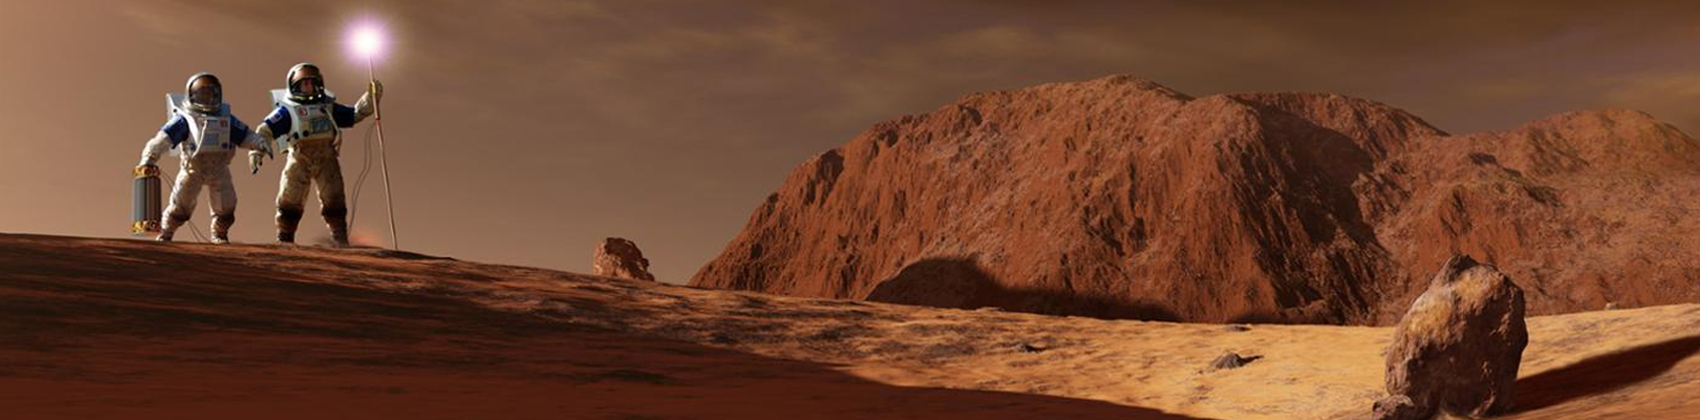 Первые на Марсе. Мечта Сергея Королева